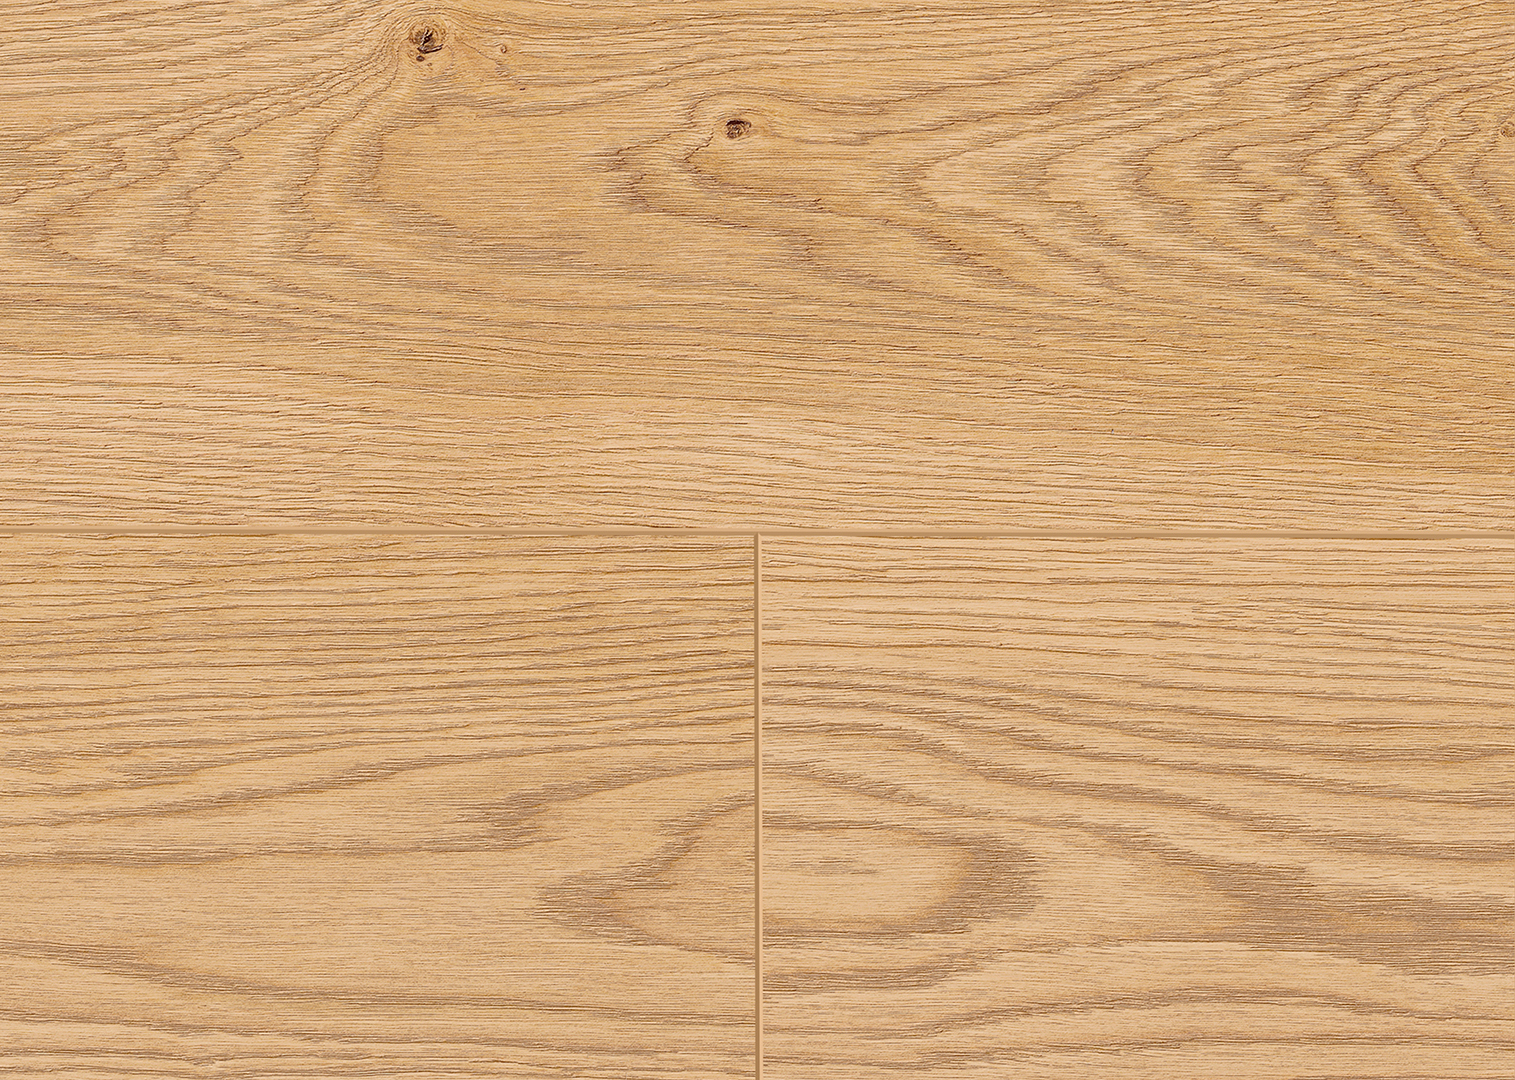 Terhürne Designboden Avatara PerForm wood Art. 1101250216 Eiche Artemis Lange Landhausdiele 6 mm